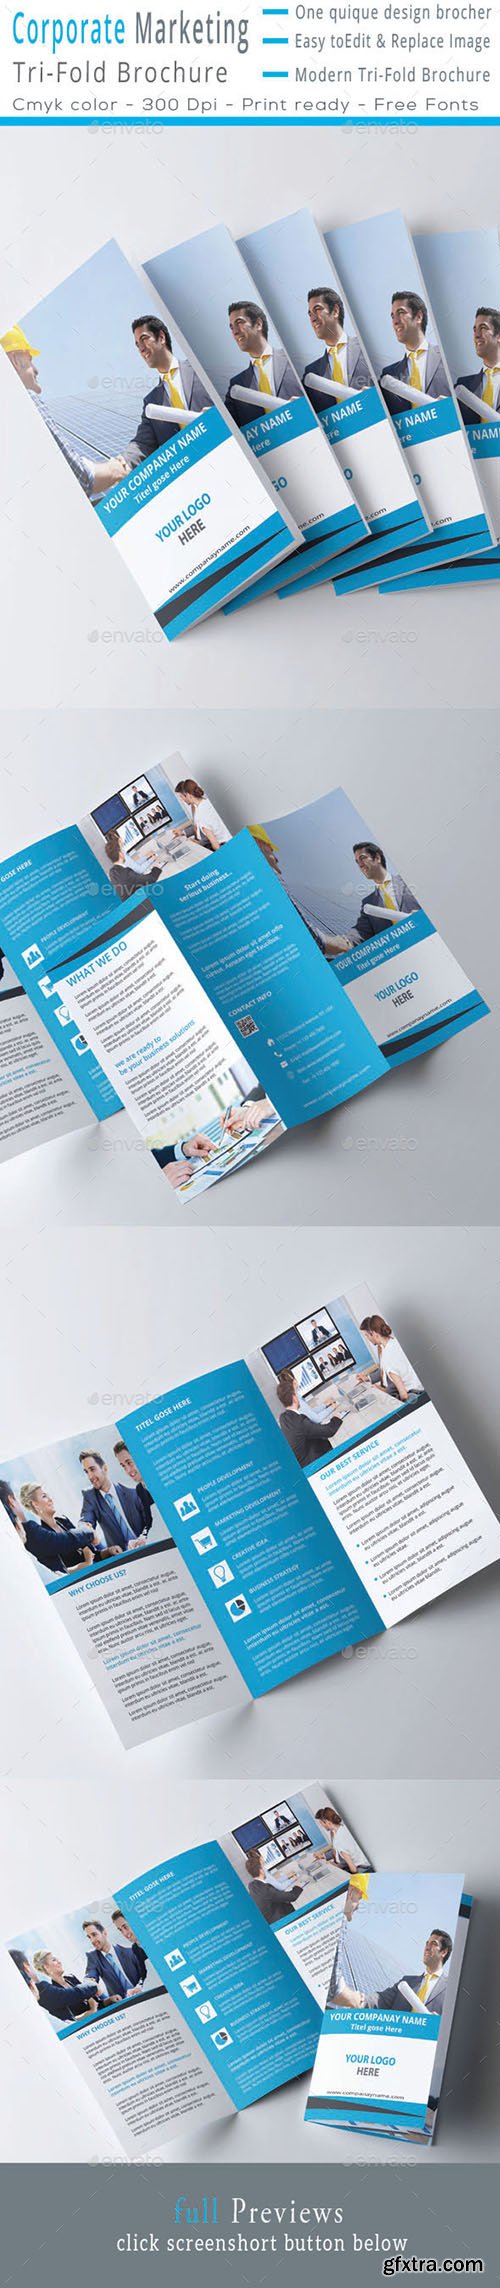 GraphicRiver Corporate MarketingTri-Fold Brochure